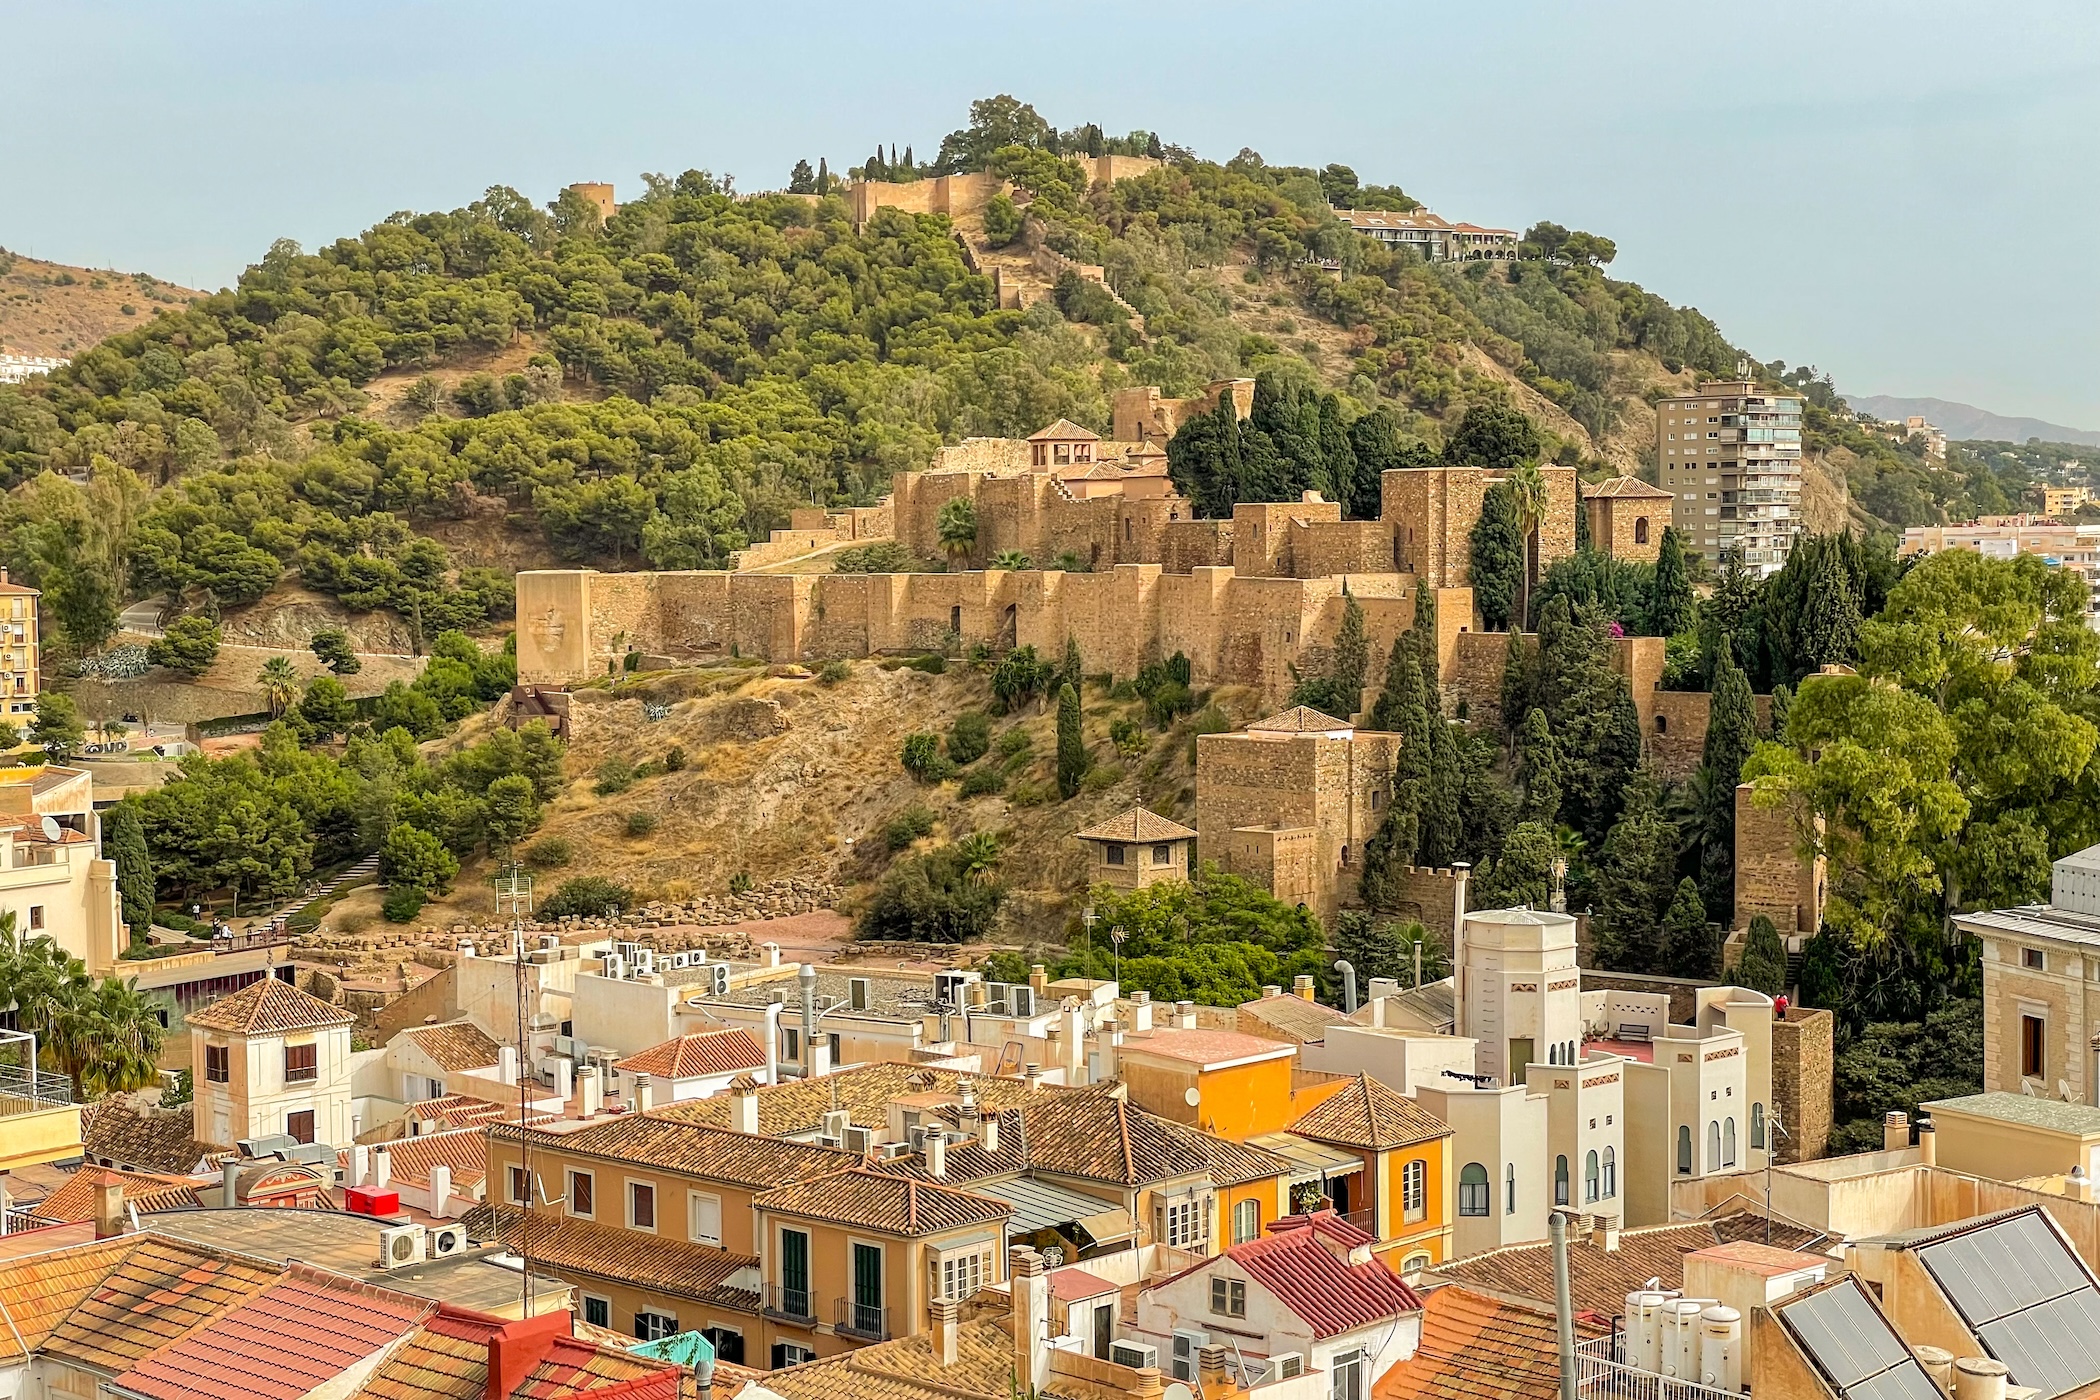 Ontdek de leukste wijken om te verblijven in Malaga: de perfecte getaway aan de Costa del Sol